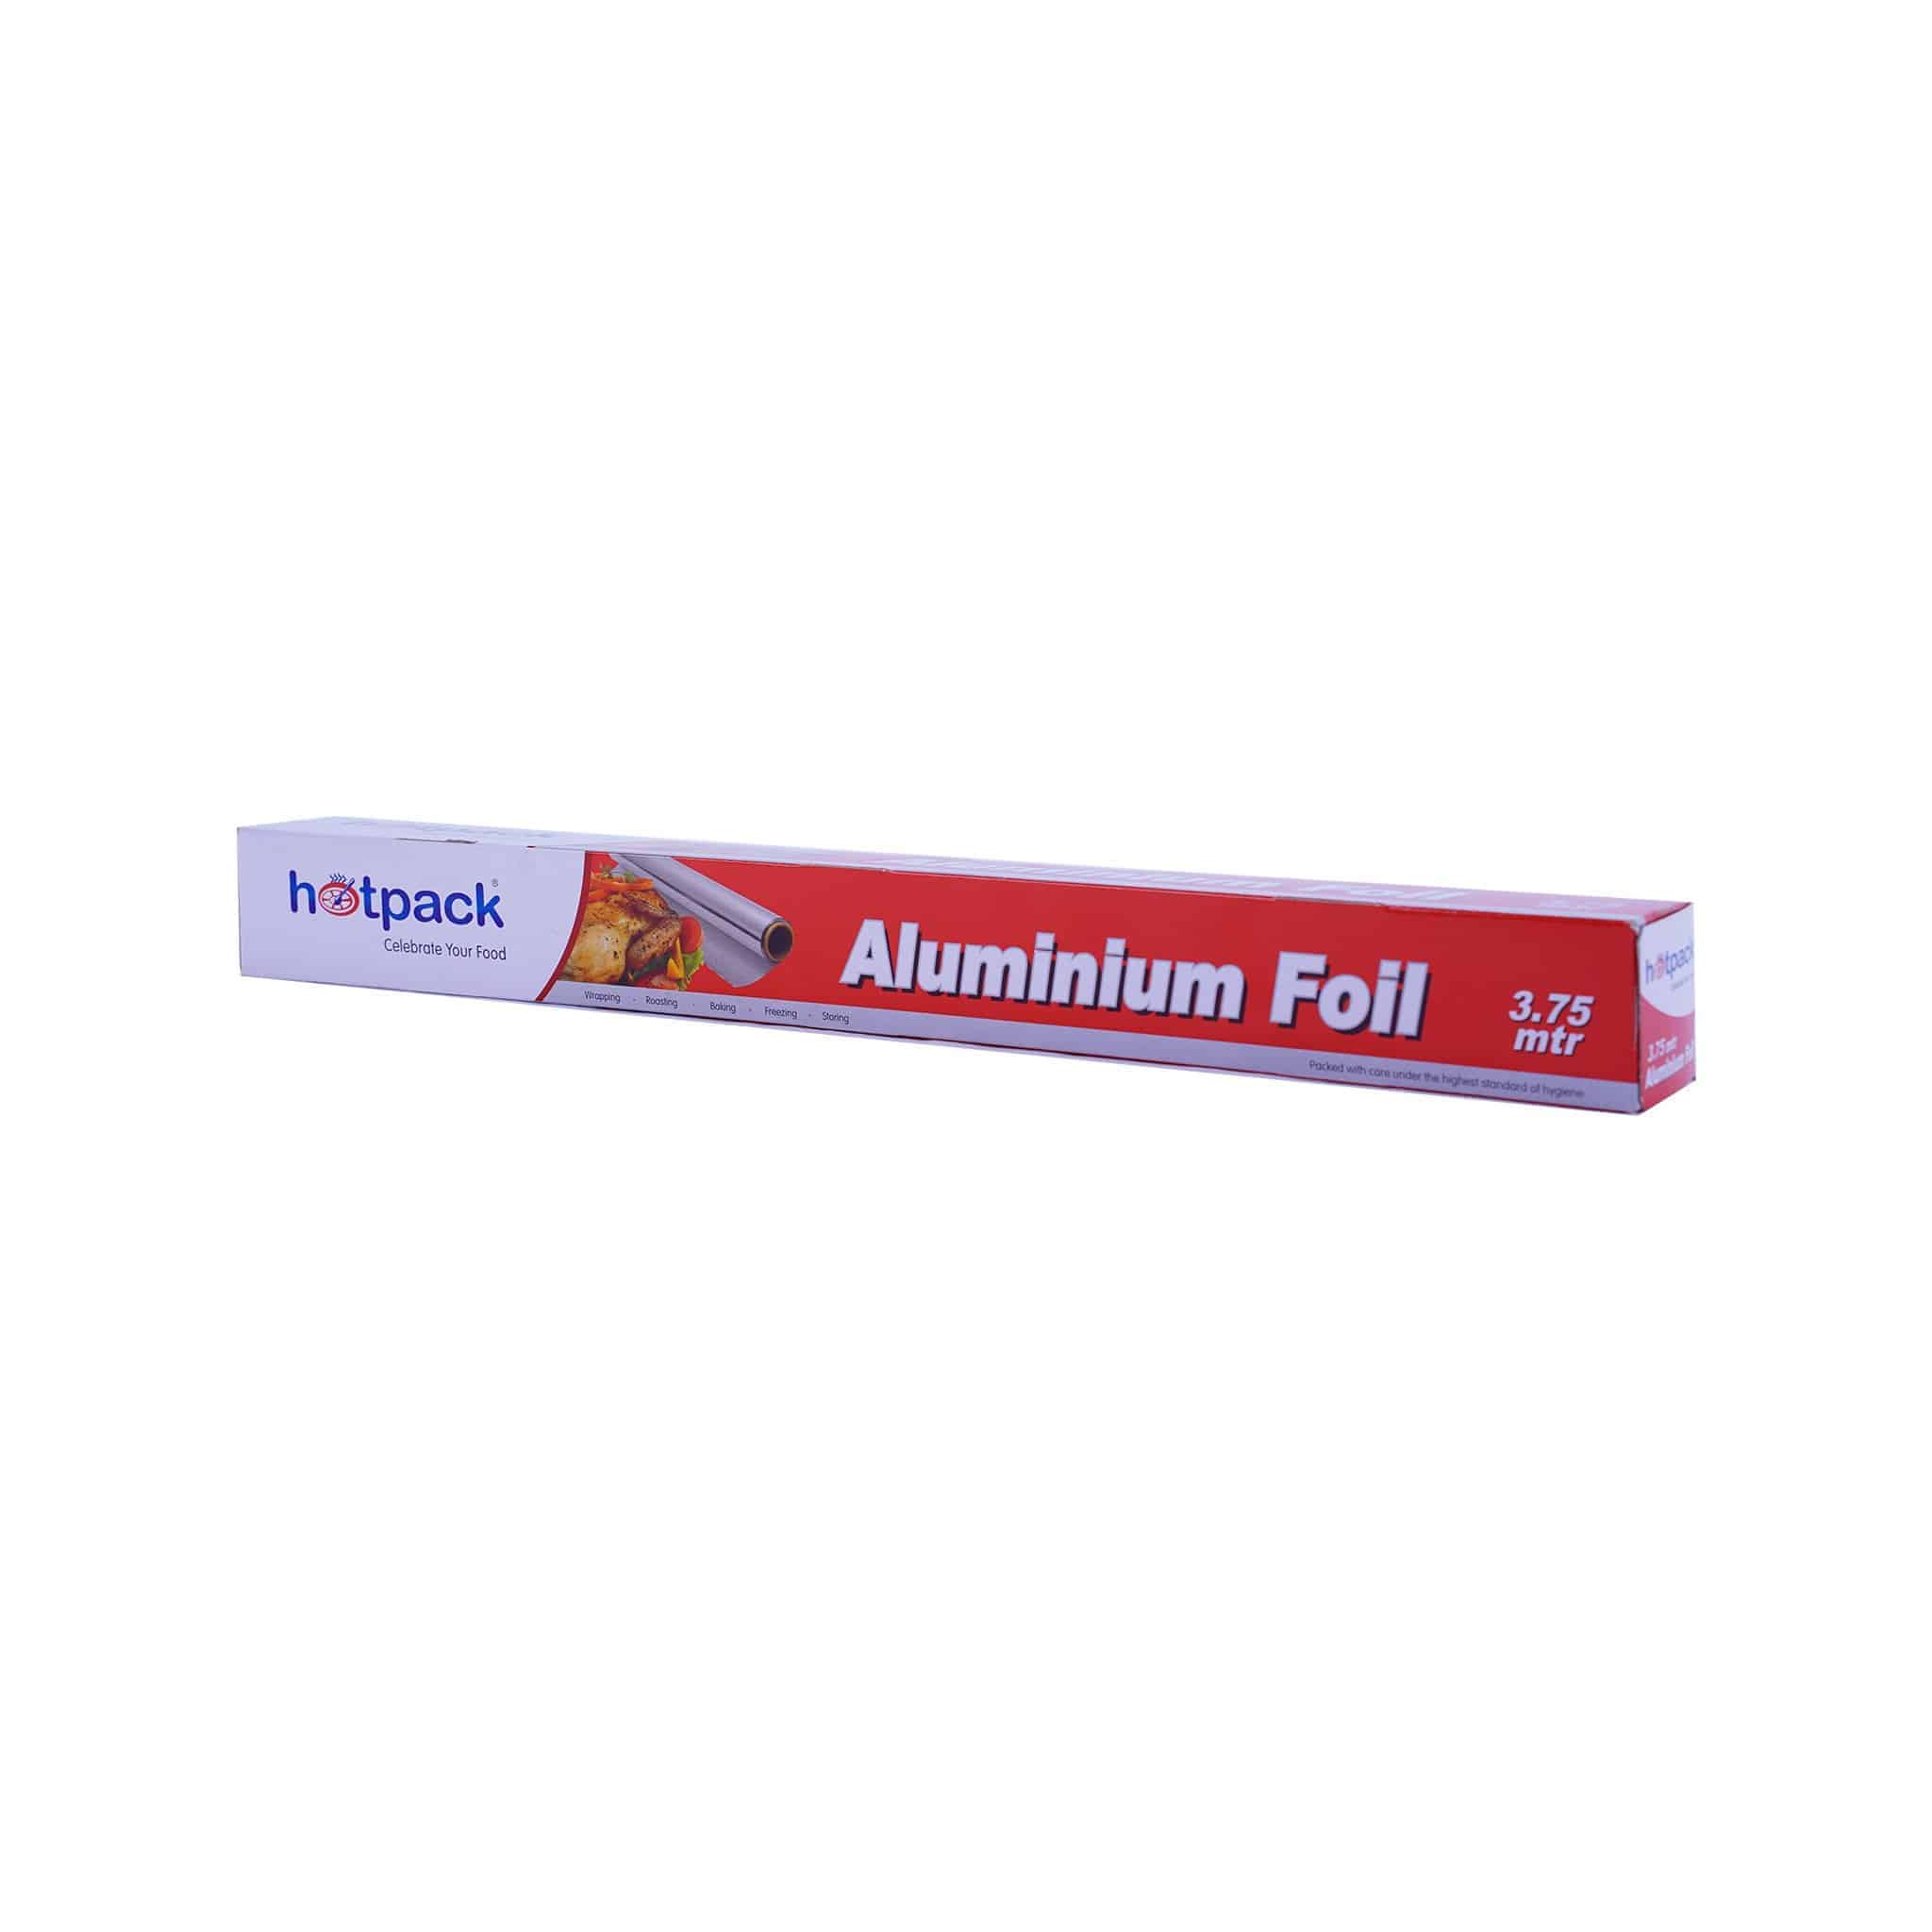 Aluminium Foil 45cmx3.75m 